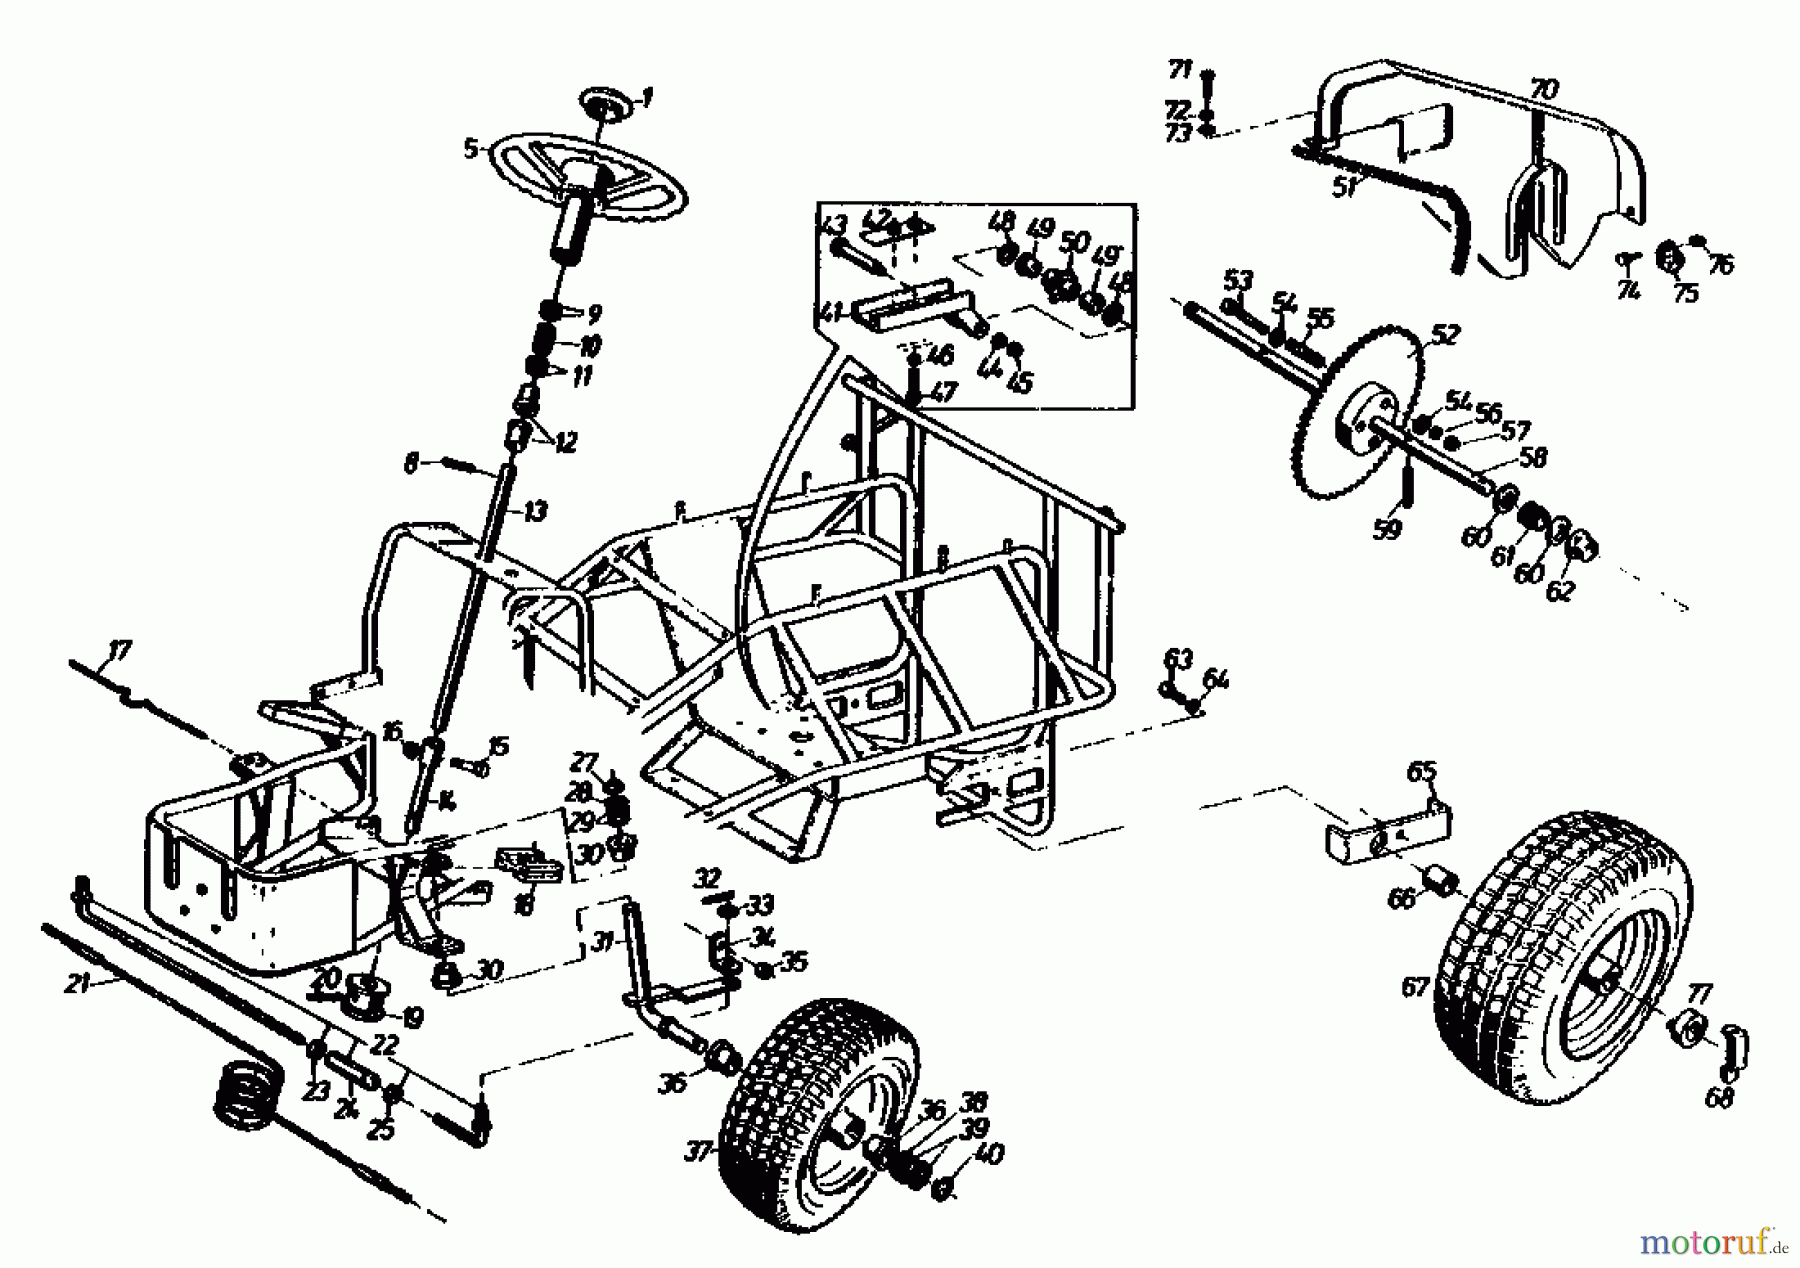  Gutbrod Tracteurs de pelouse Sprint 1000 E 02840.04  (1991) Entraînement de roulement, Volant, Système direction, Roues